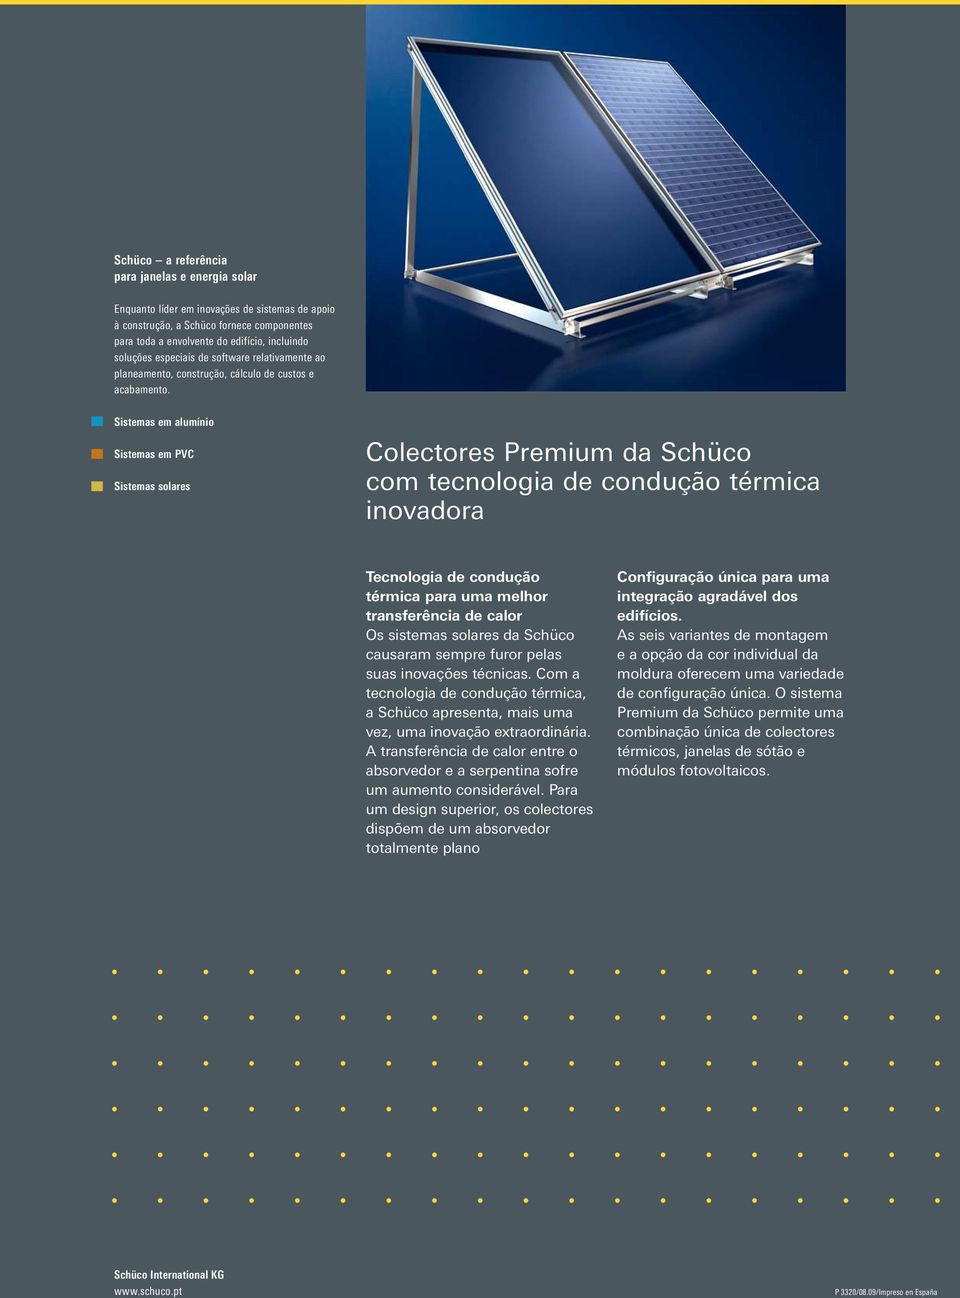 Sistemas em alumínio Sistemas em PVC Sistemas solares Colectores Premium da Schüco com tecnologia de condução térmica inovadora Tecnologia de condução térmica para uma melhor transferência de calor